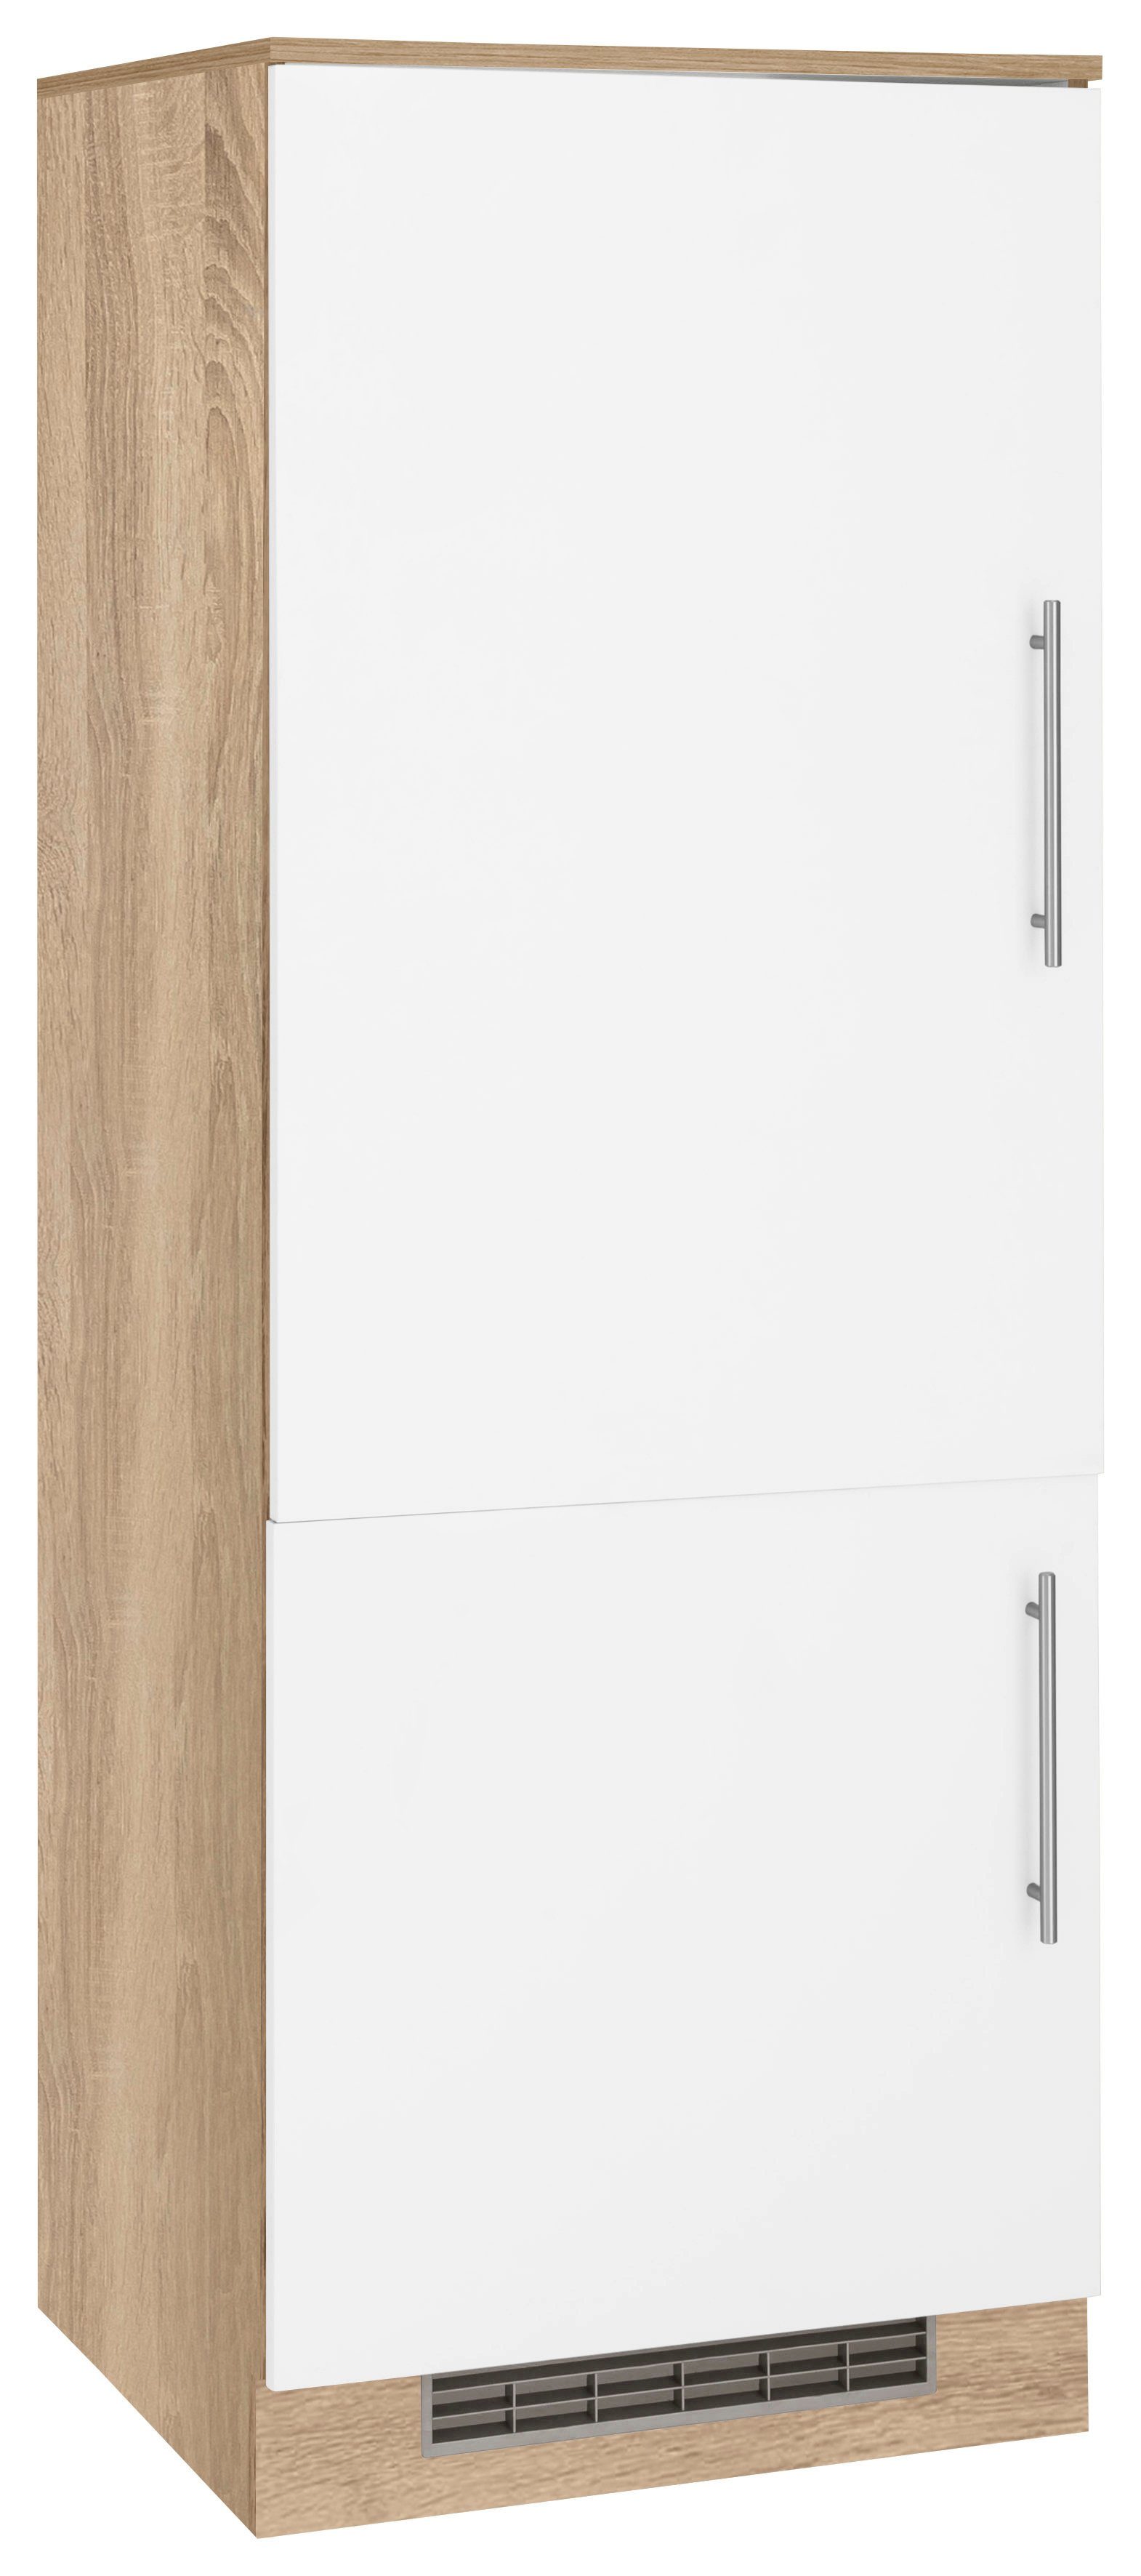 wiho Küchen Kühlumbauschrank Cali 60 cm breit Front: Weiß matt, Korpus: Sonoma eichefarben | Eichefarben